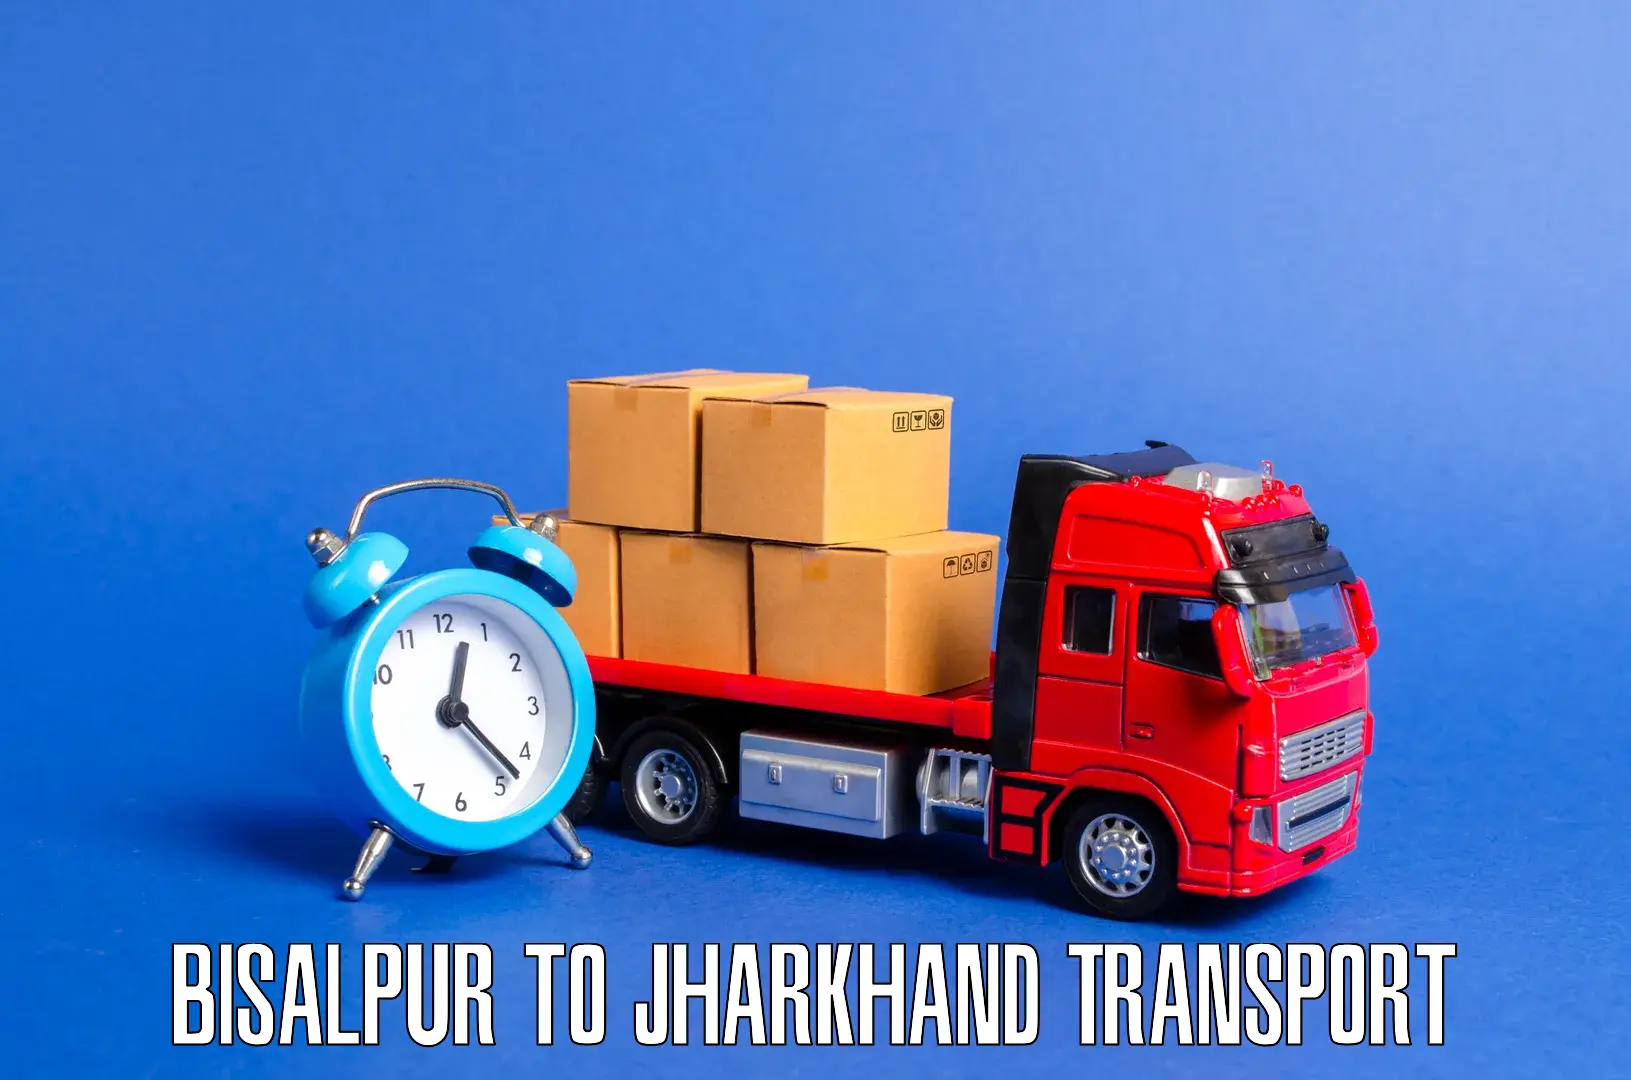 Interstate transport services Bisalpur to Garhwa